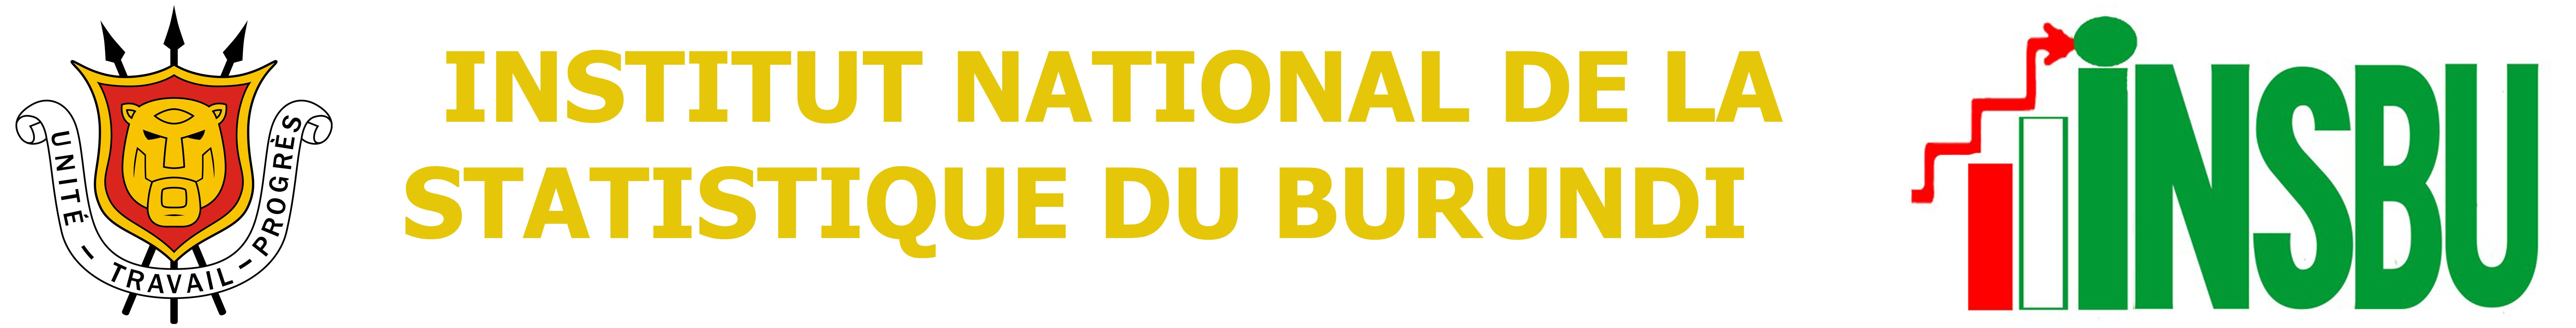 INSTITUT NATIONAL DE LA STATISTIQUE DU BURUNDI